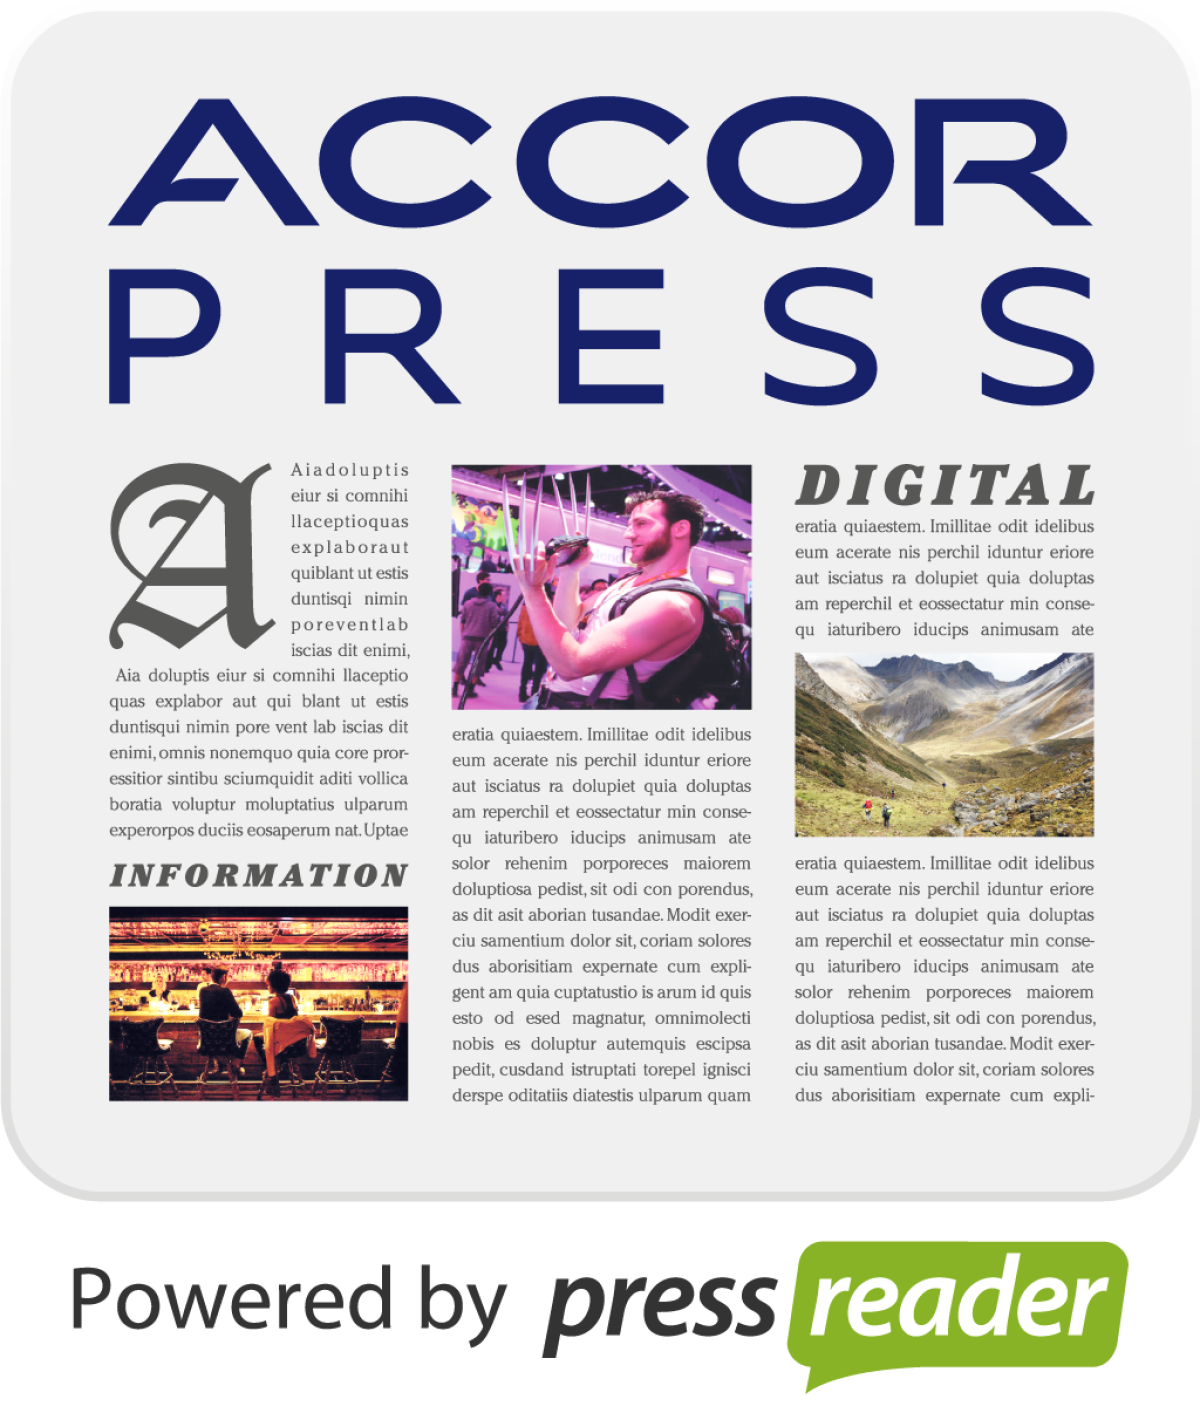 Dostęp do darmowej prasy z Accor Press